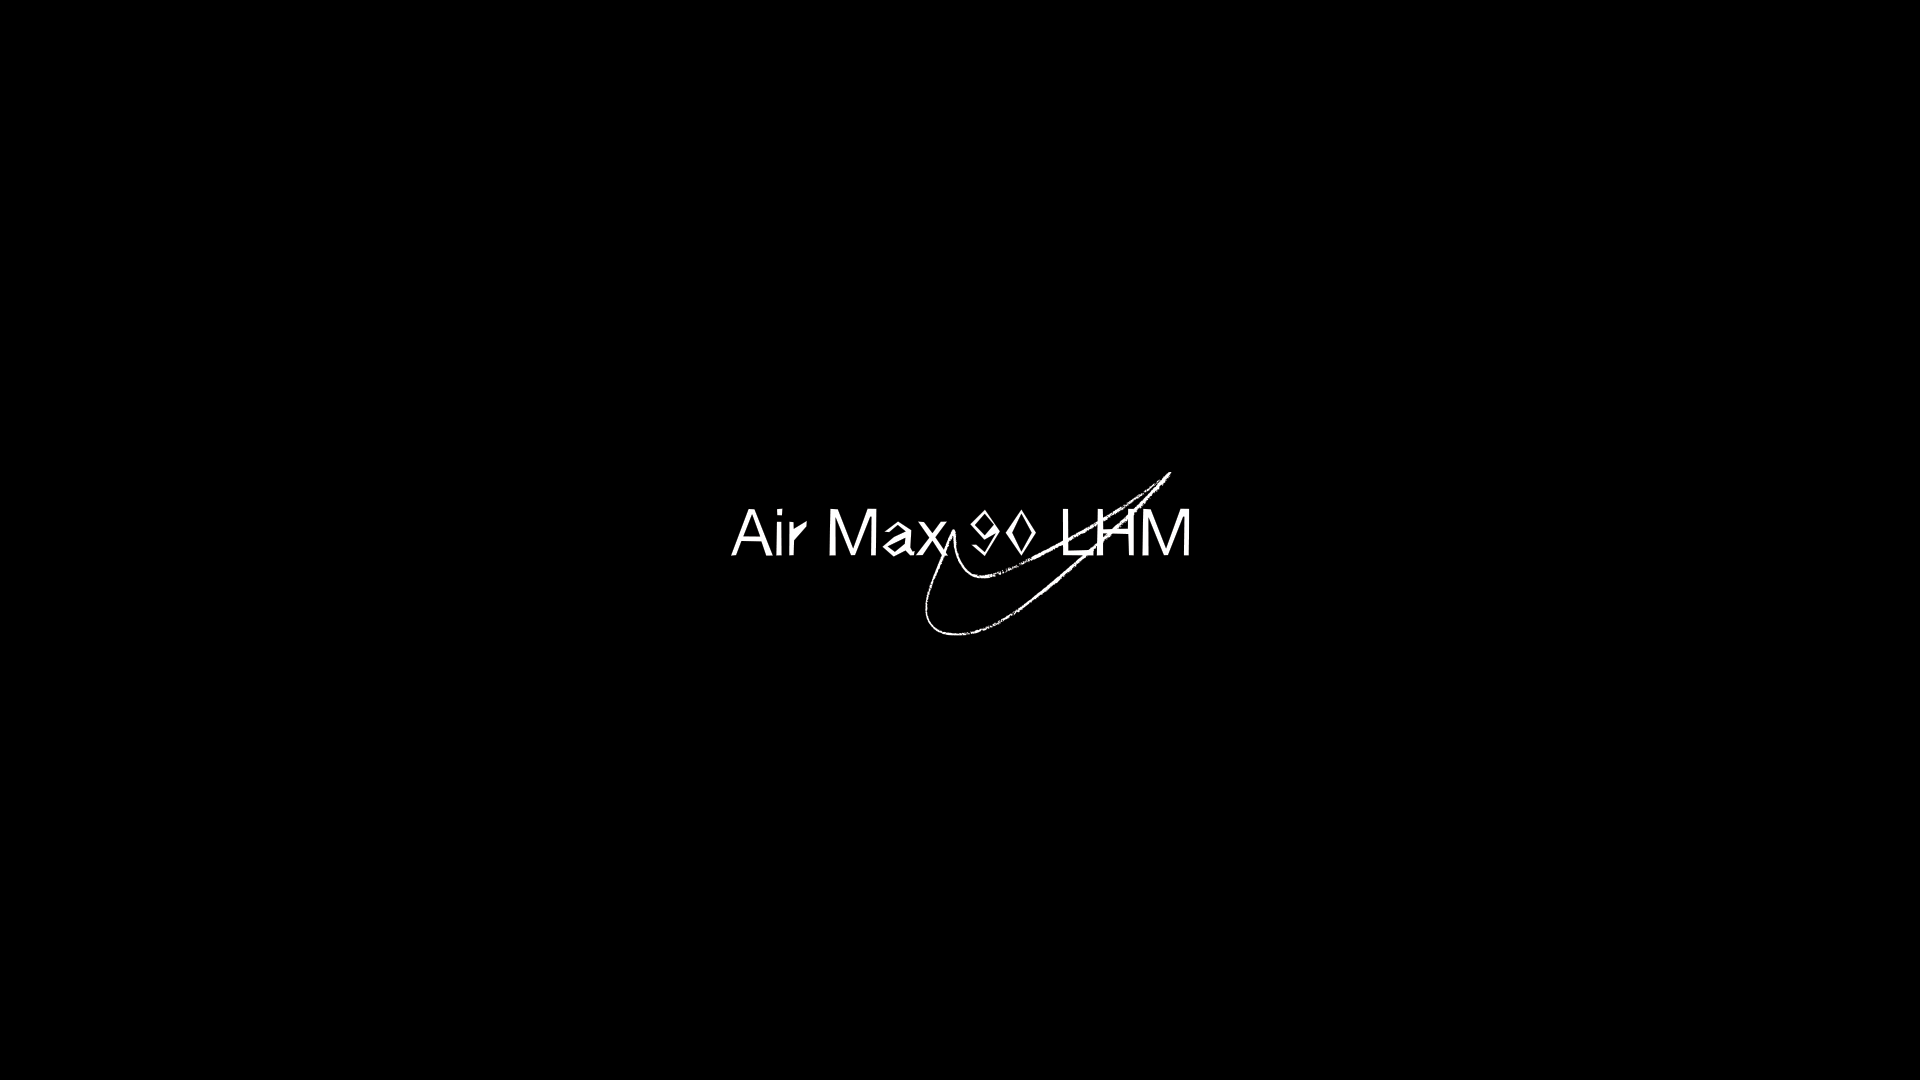 Air Max 90 LHM, Somos Familia New York City, Somos Familia Los Angelos